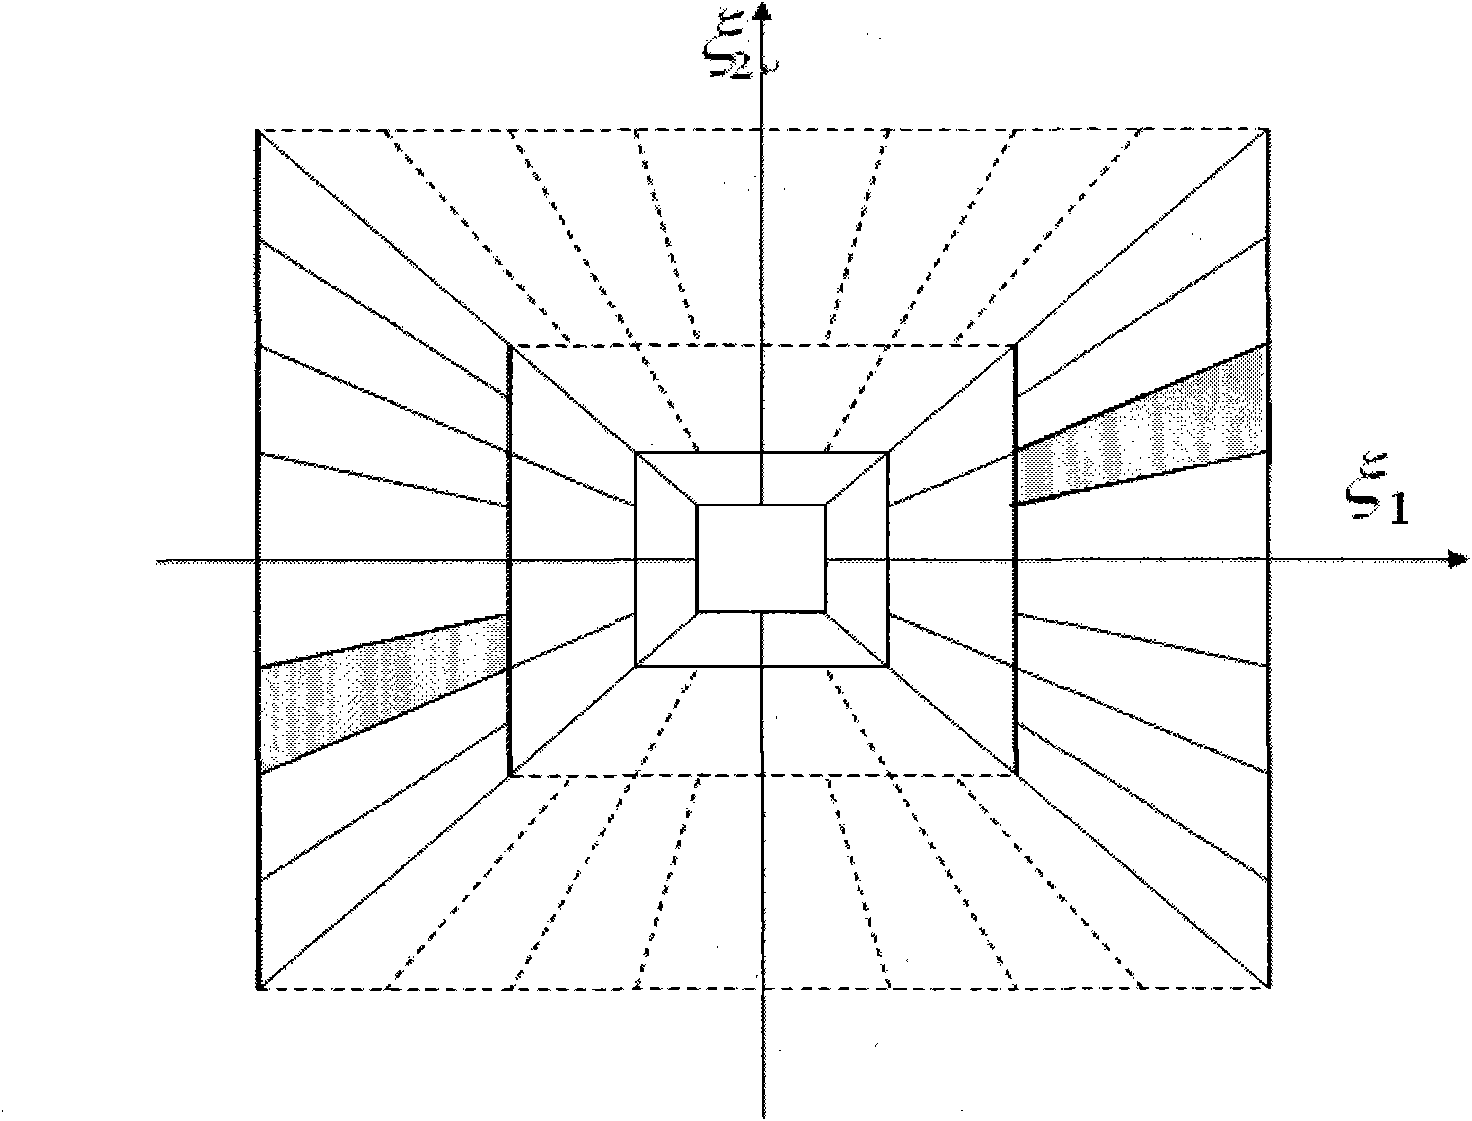 Shearing wave image denoising method based on cutoff window